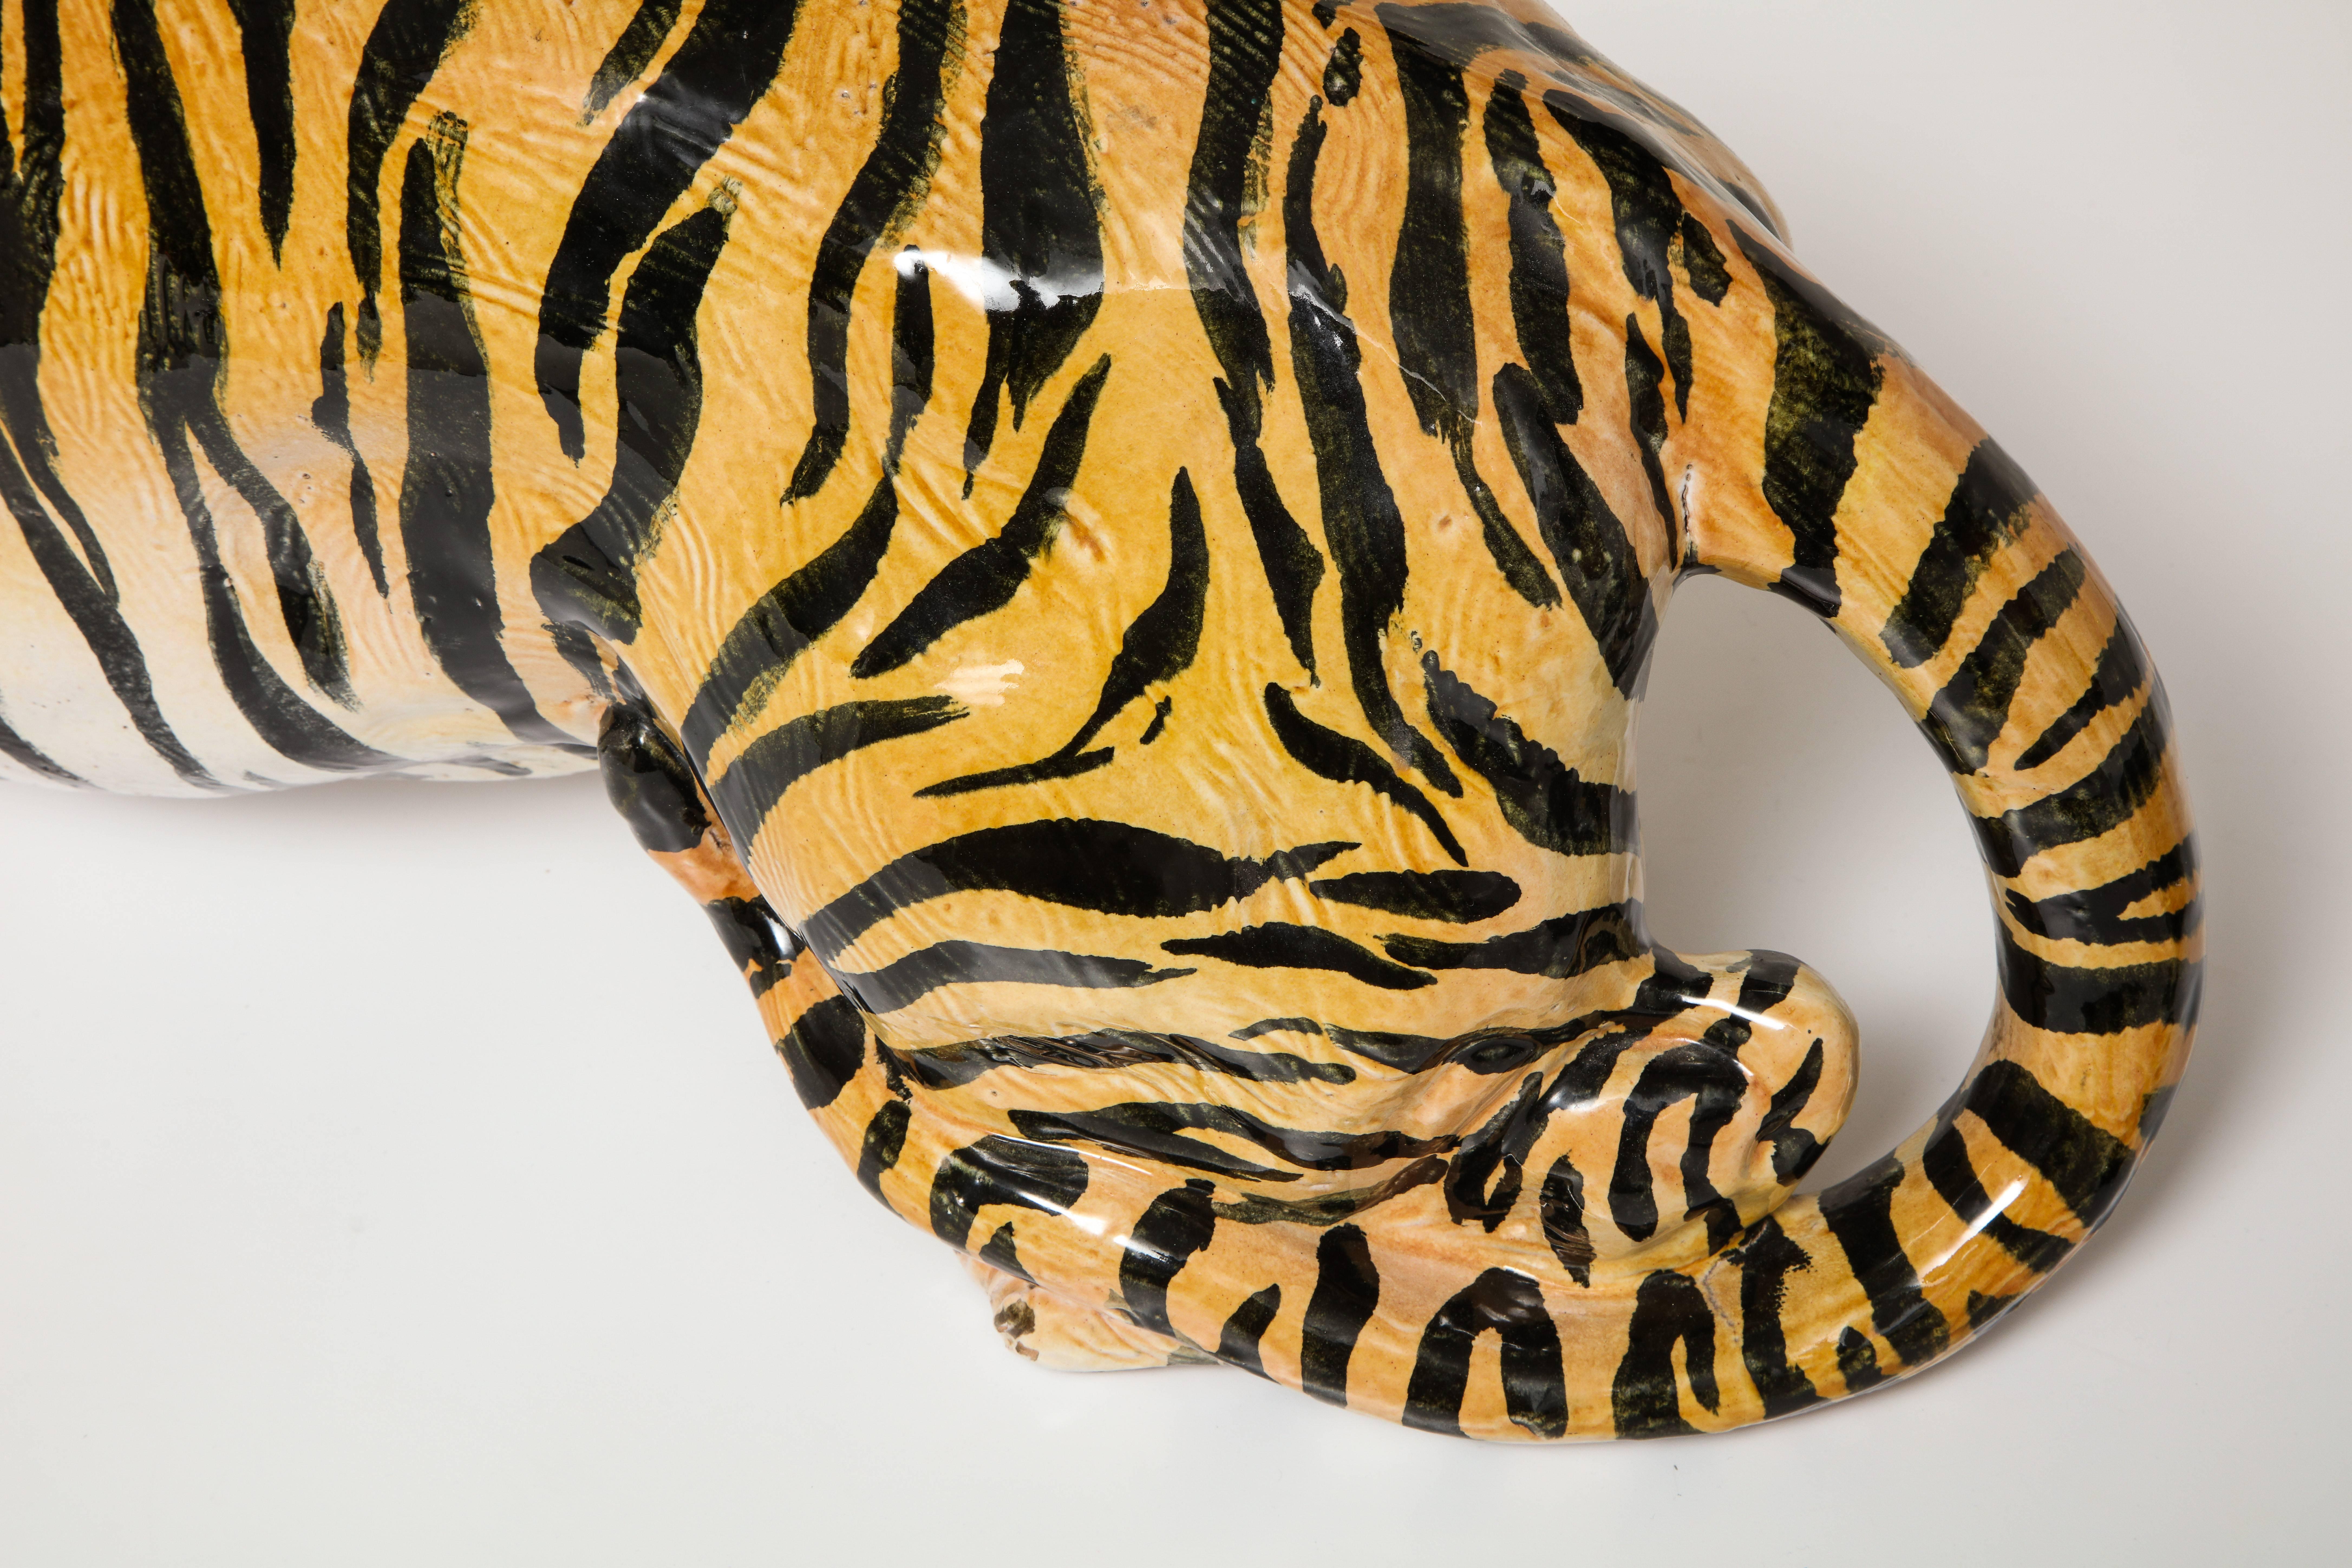 Large 1960s Italian Ceramic Tiger Sculpture 1